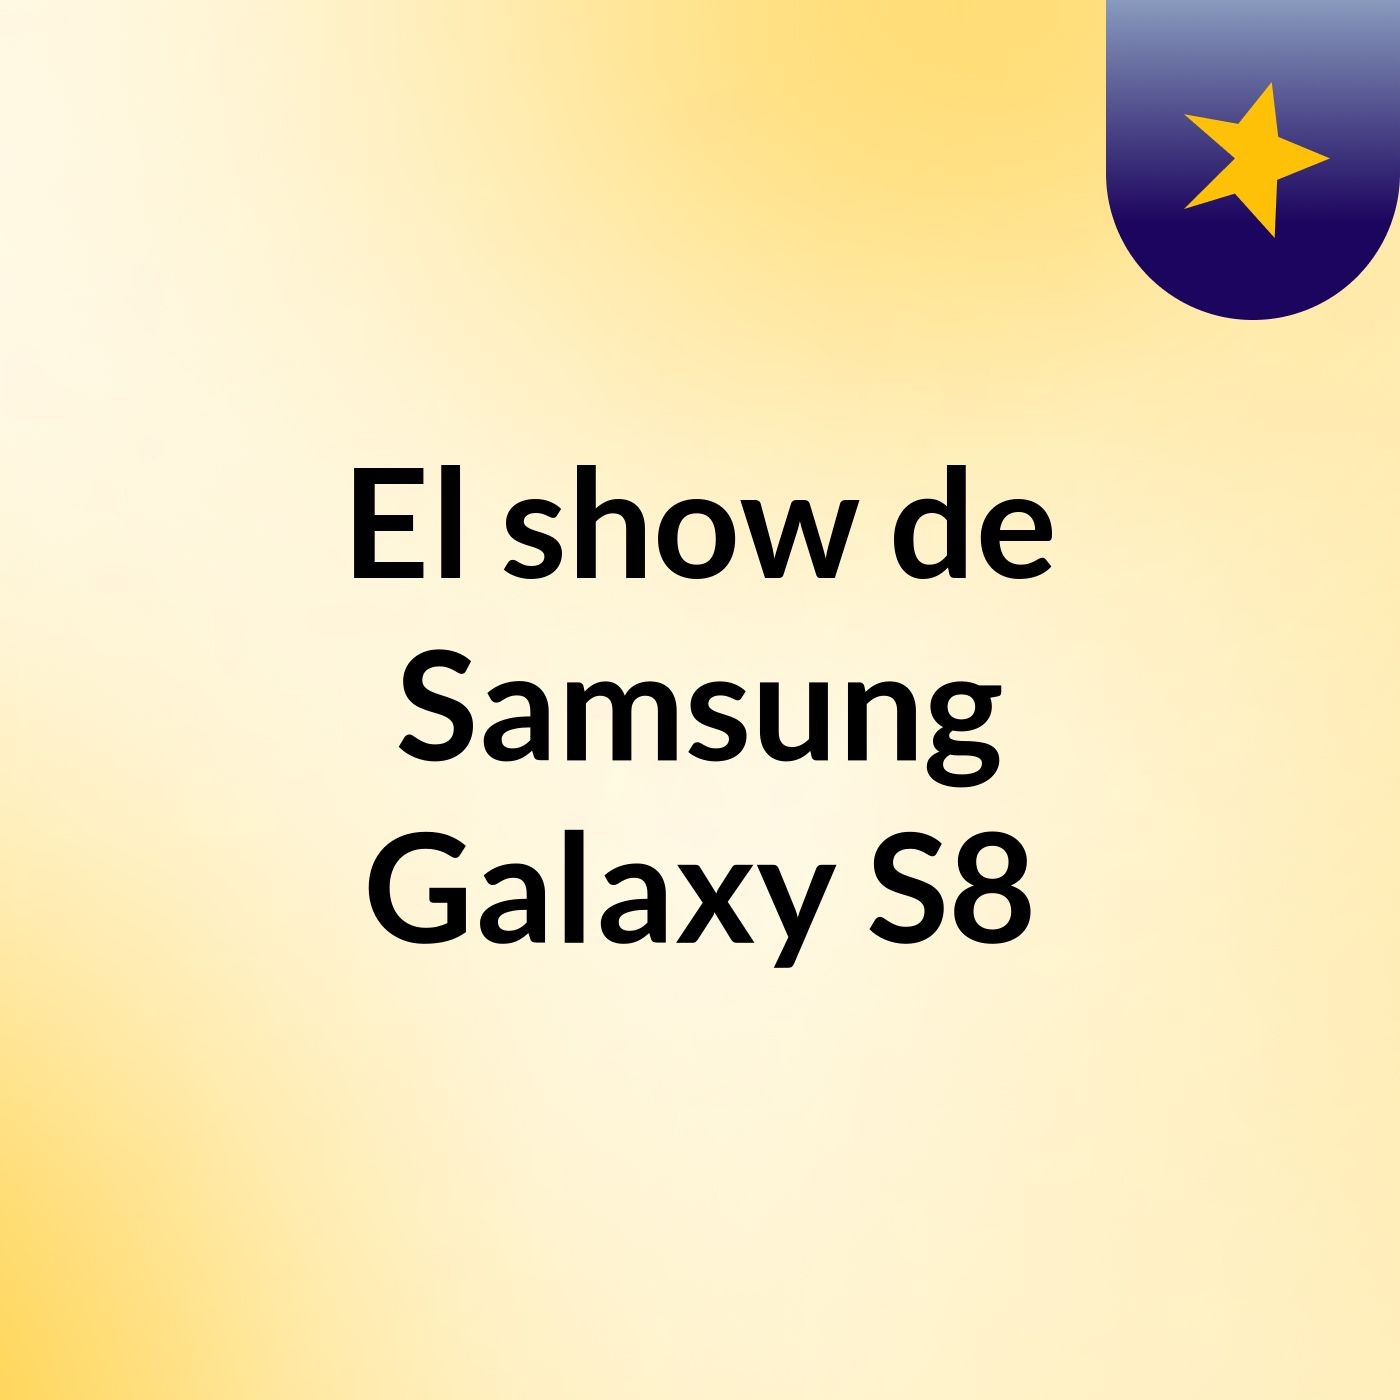 El show de Samsung Galaxy S8